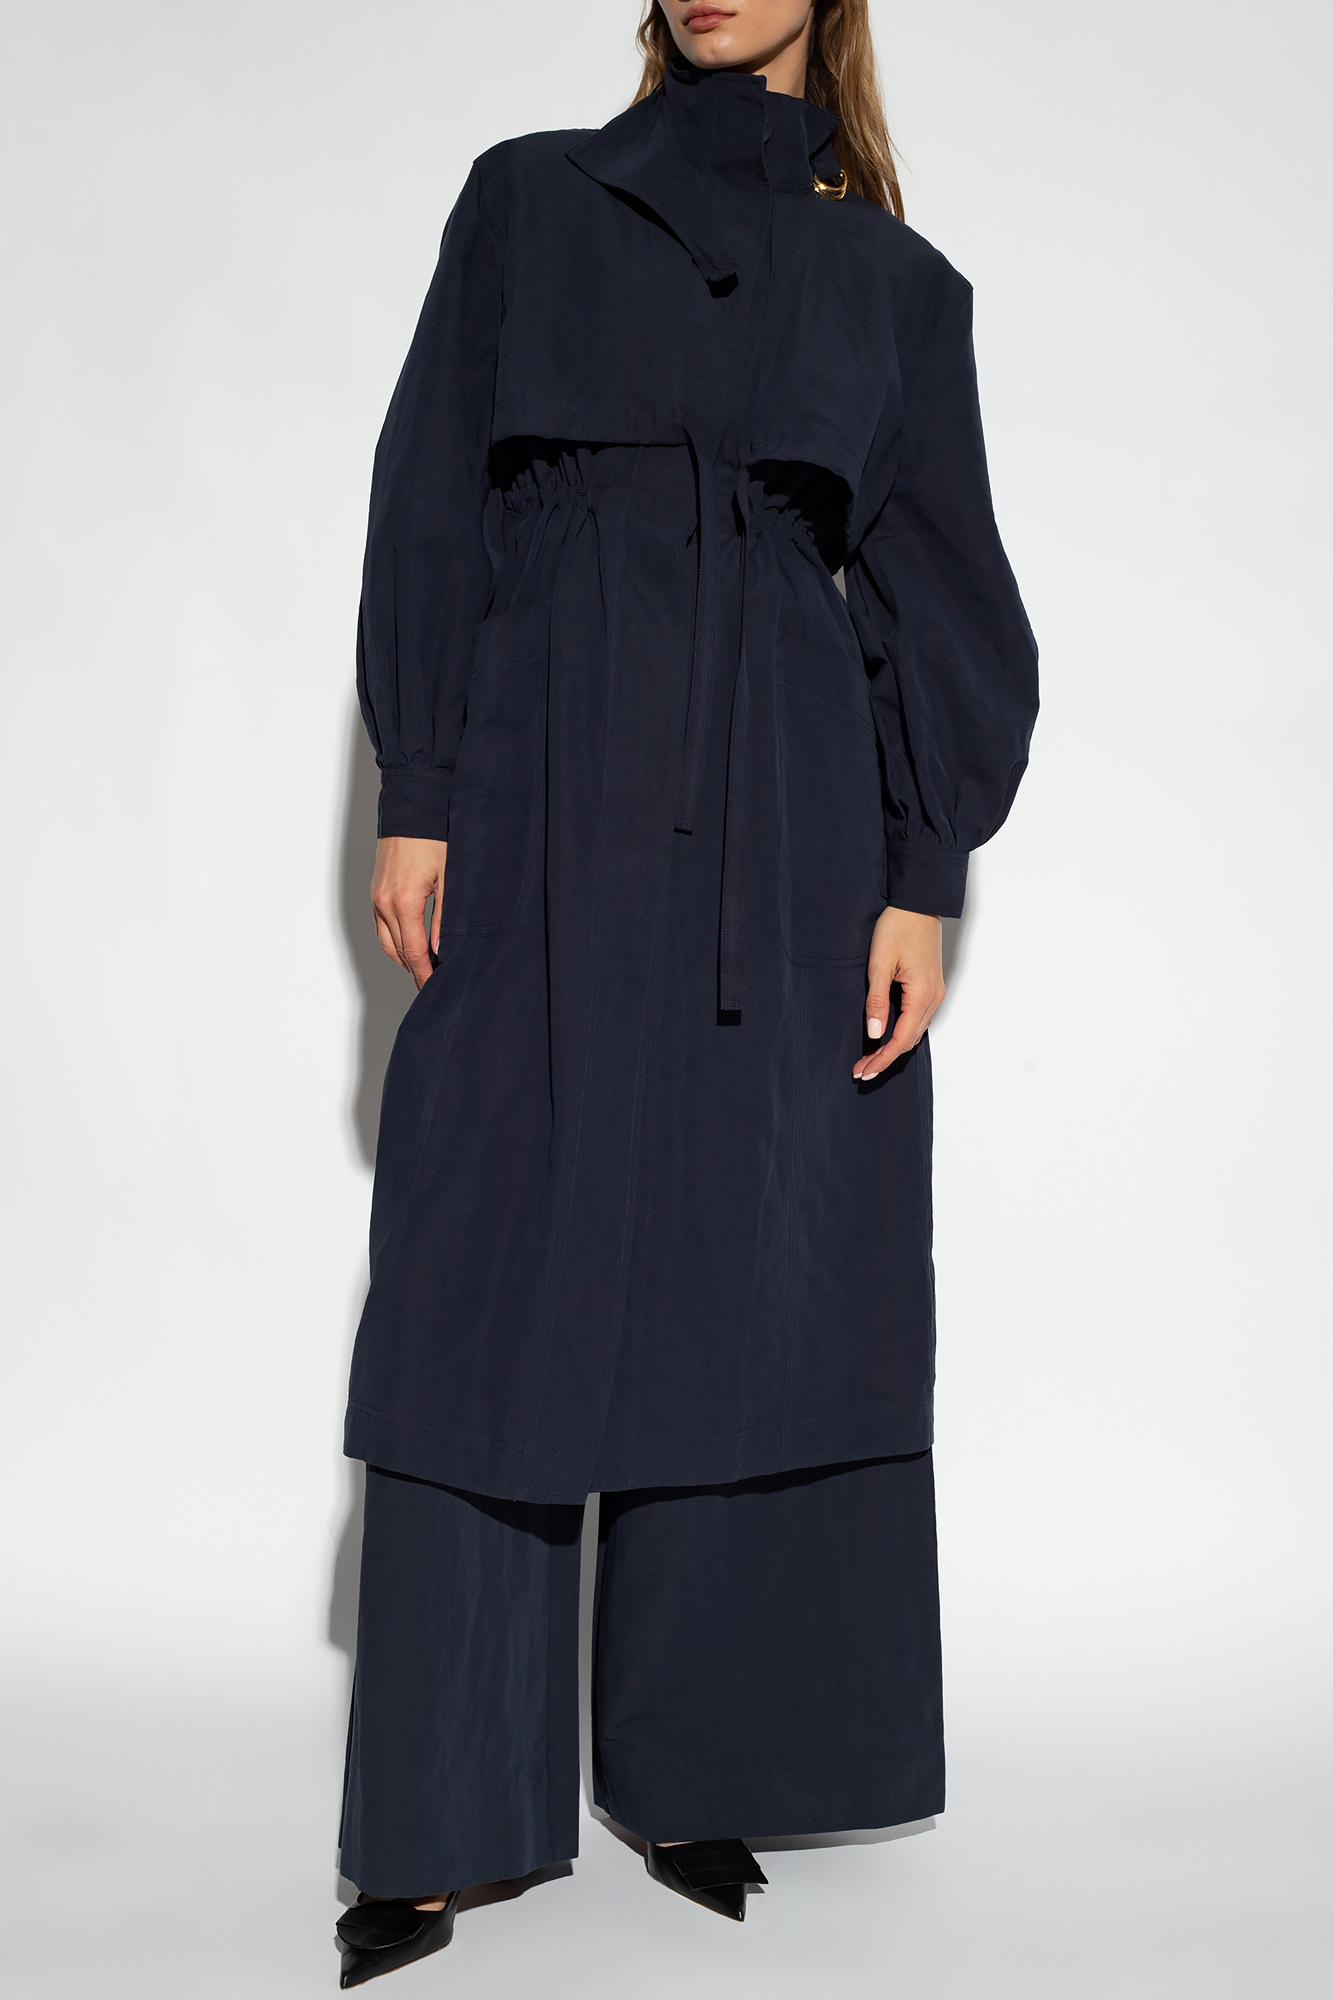 Ulla Johnson ‘Galina’ coat | Women's Clothing | Vitkac